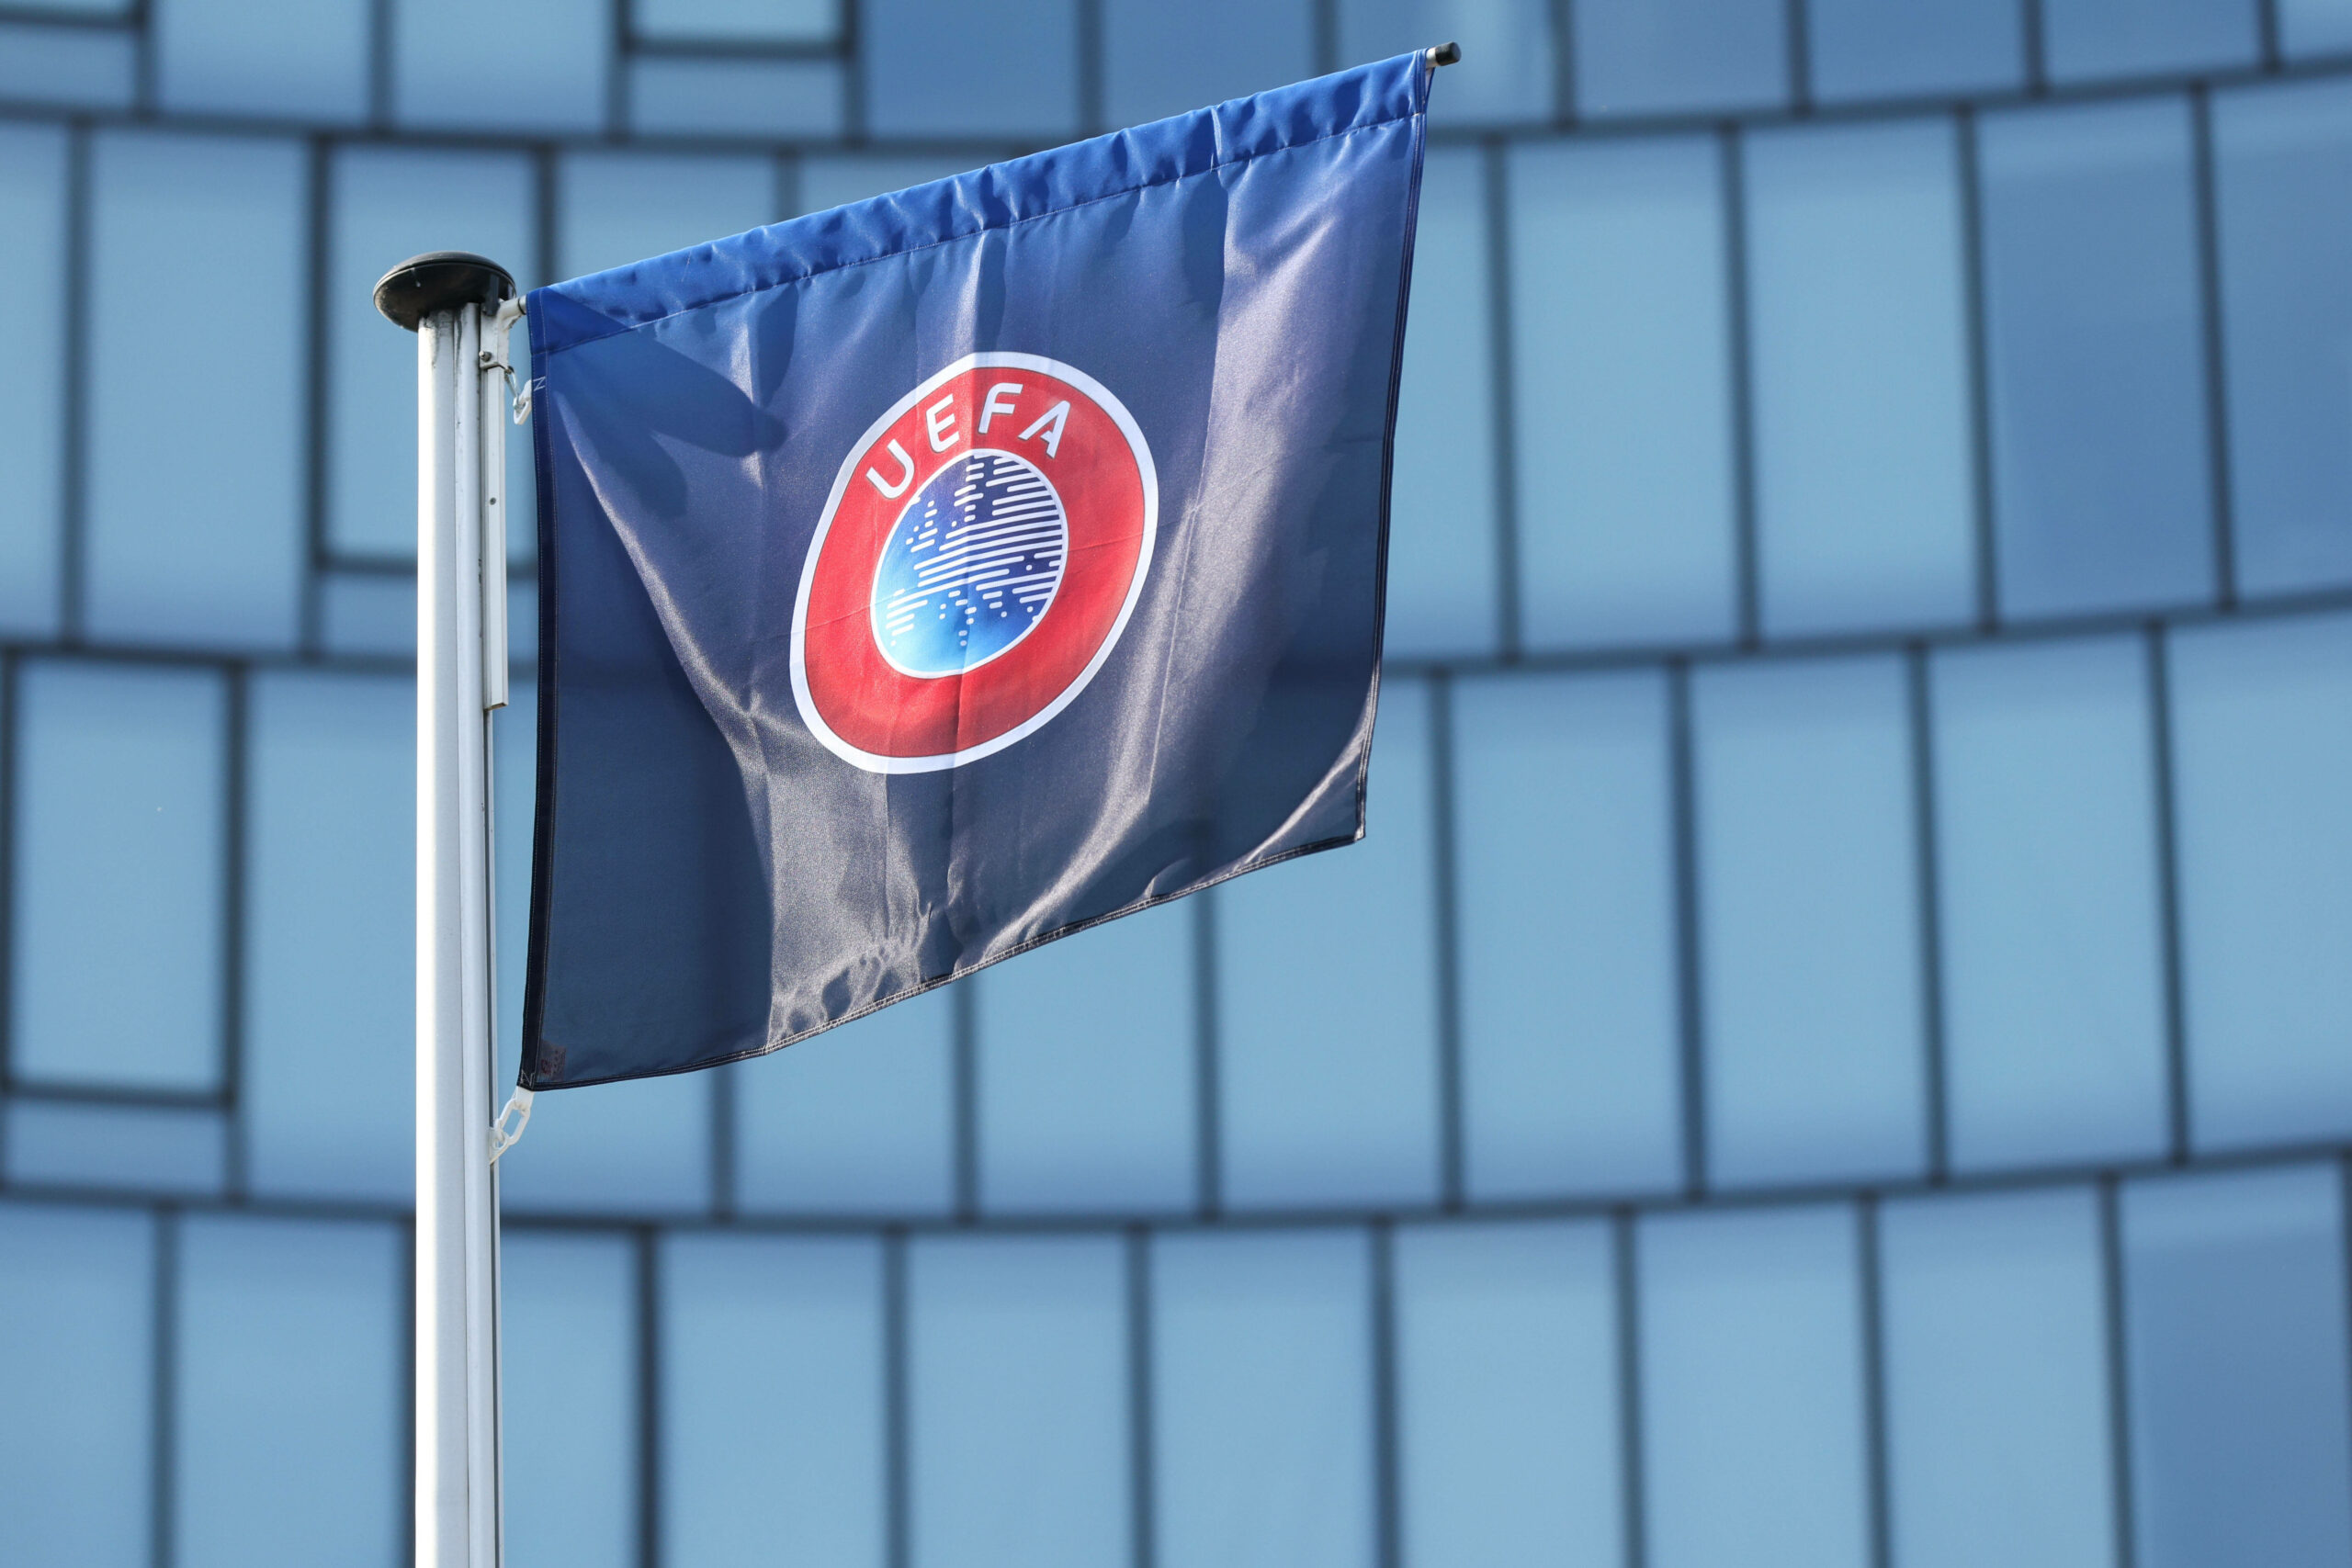 Eine UEFA-Fahne, die im Wind weht.